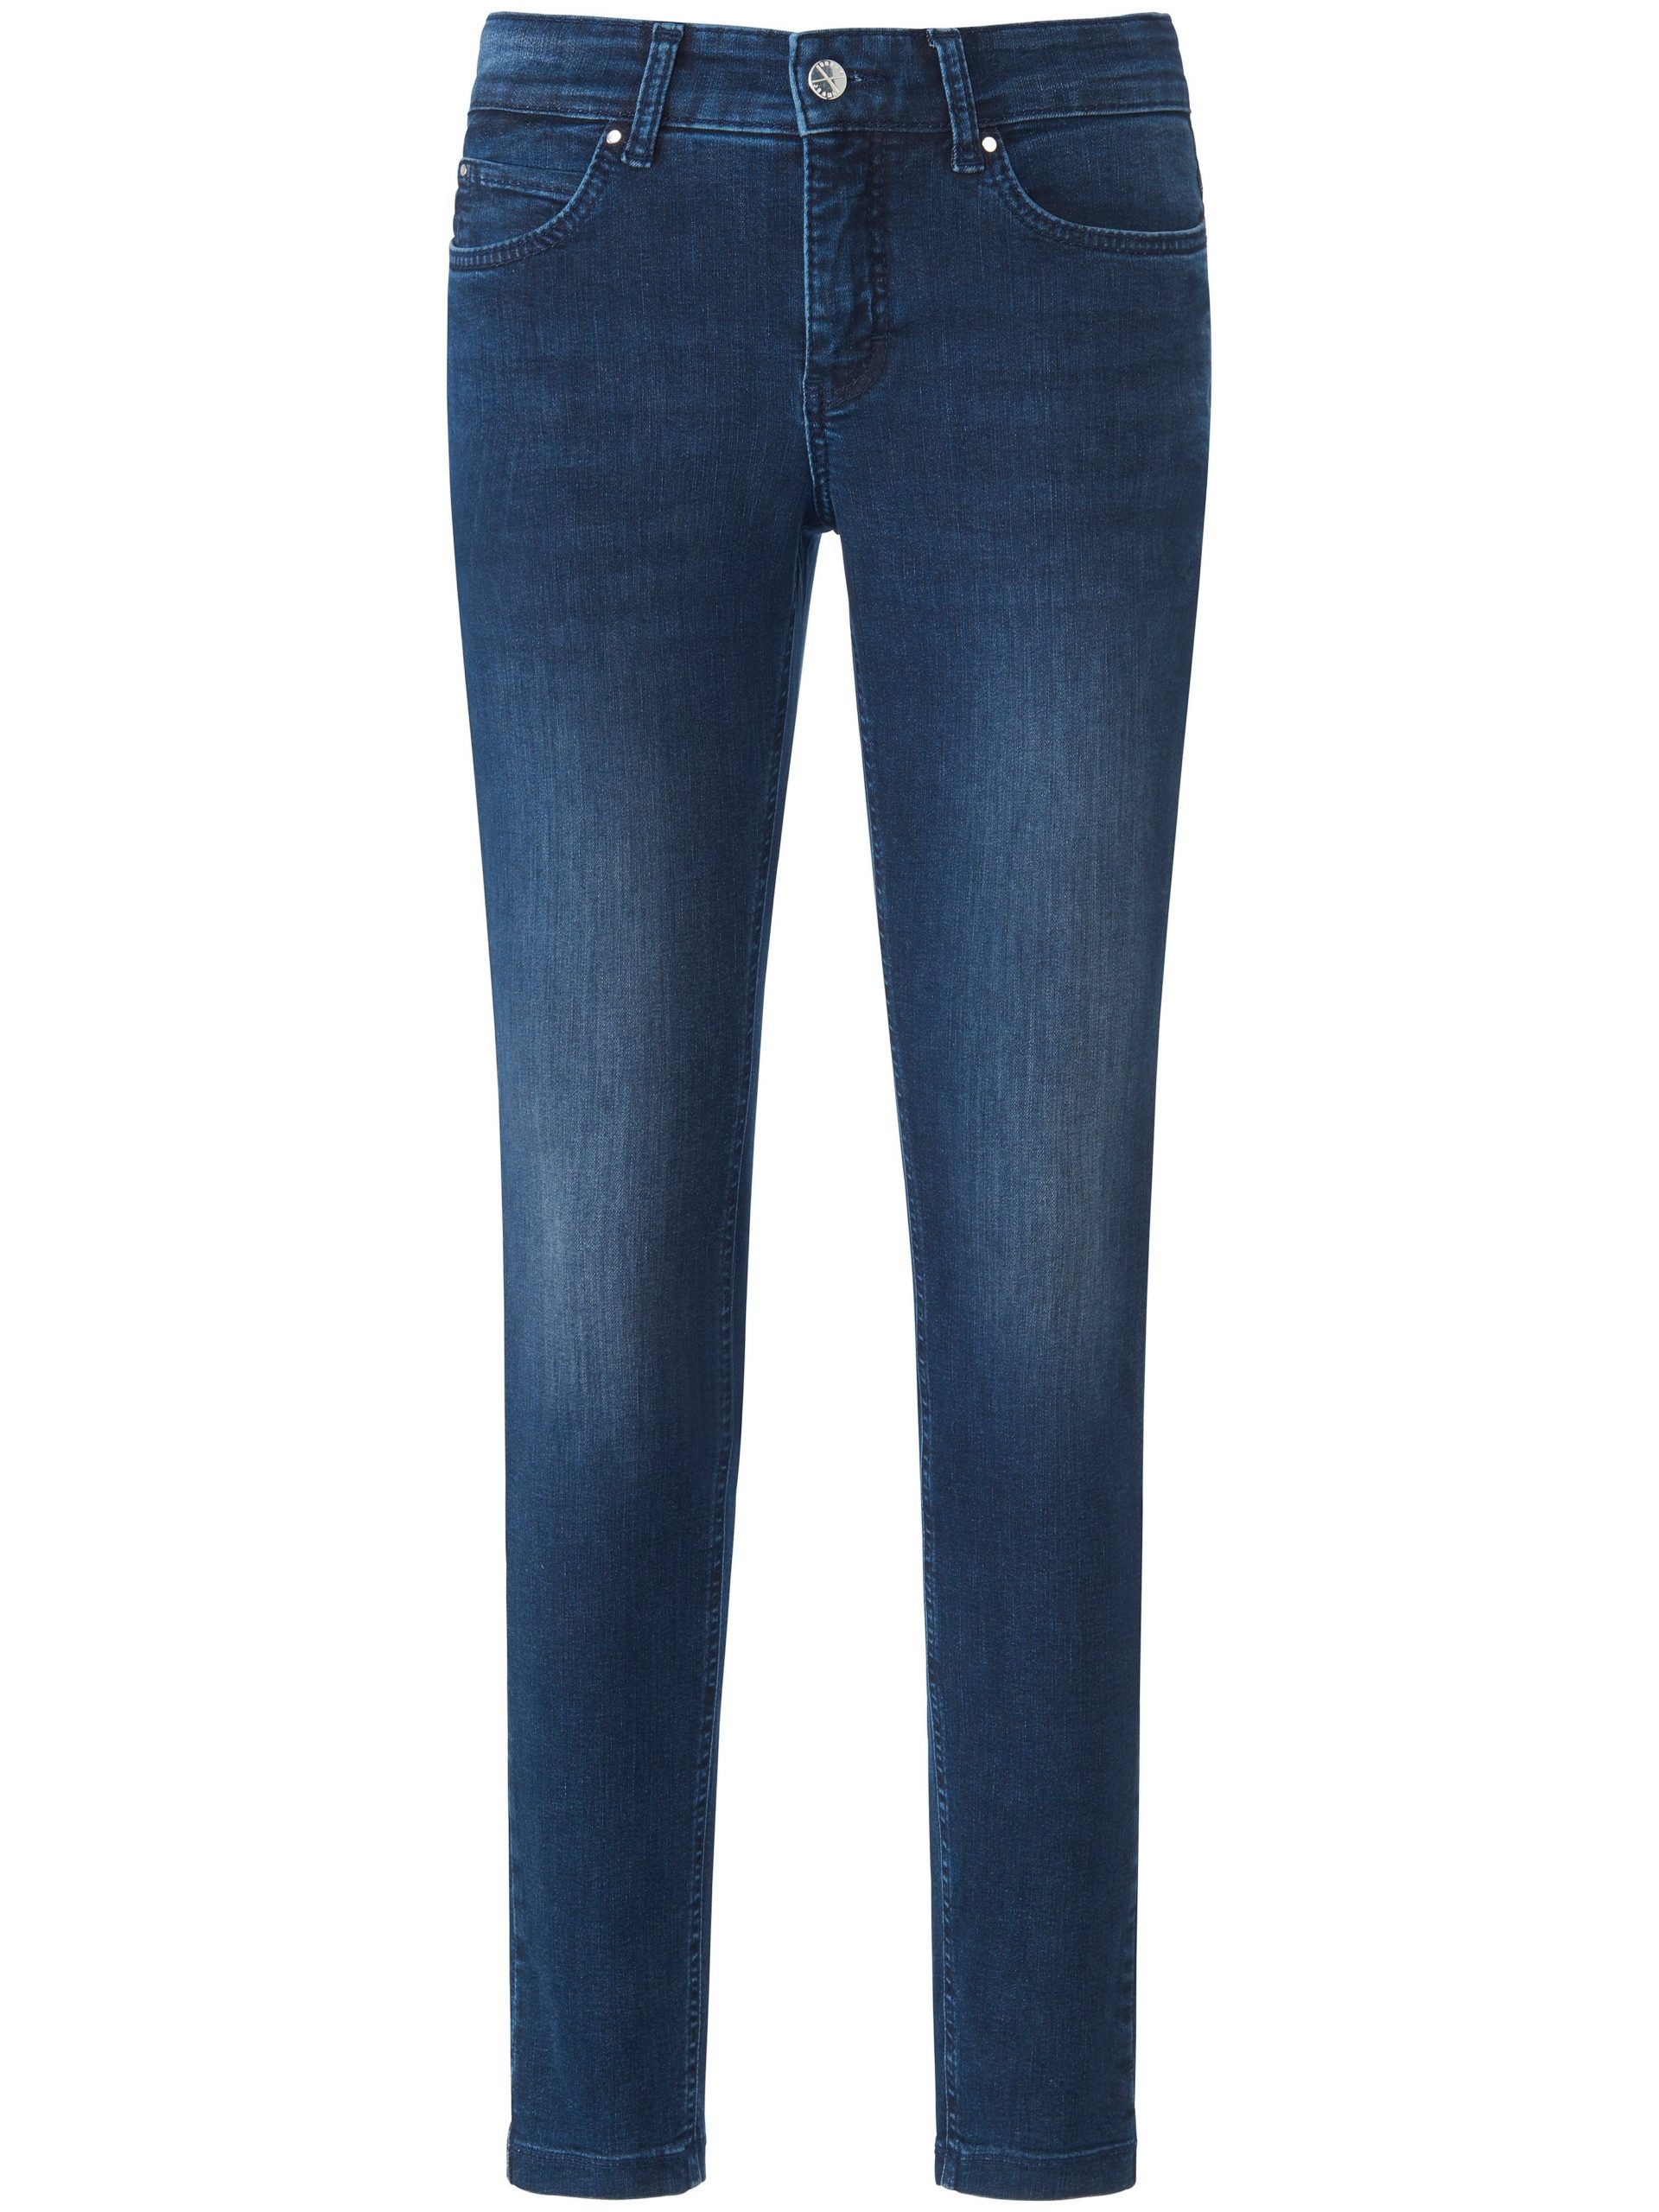 Jeans Dream Skinny smalle pijpen Van Mac denim Kopen